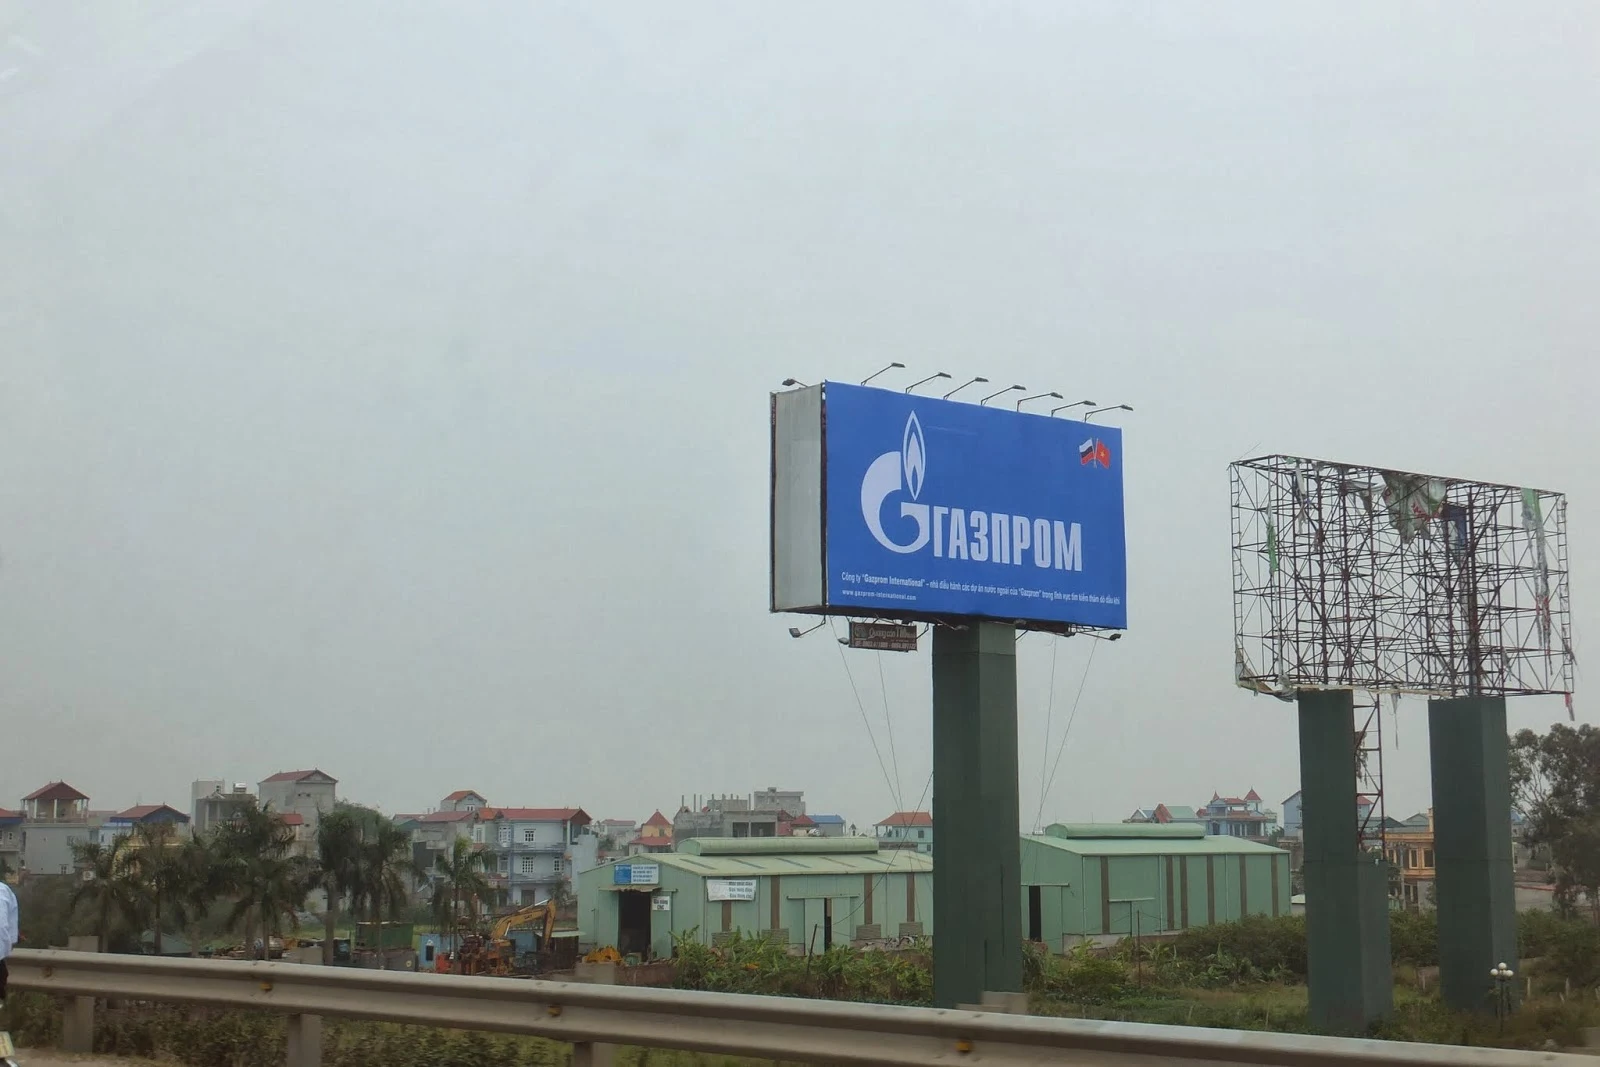 gazprom-ad-vietnam ガスプロムの大型広告